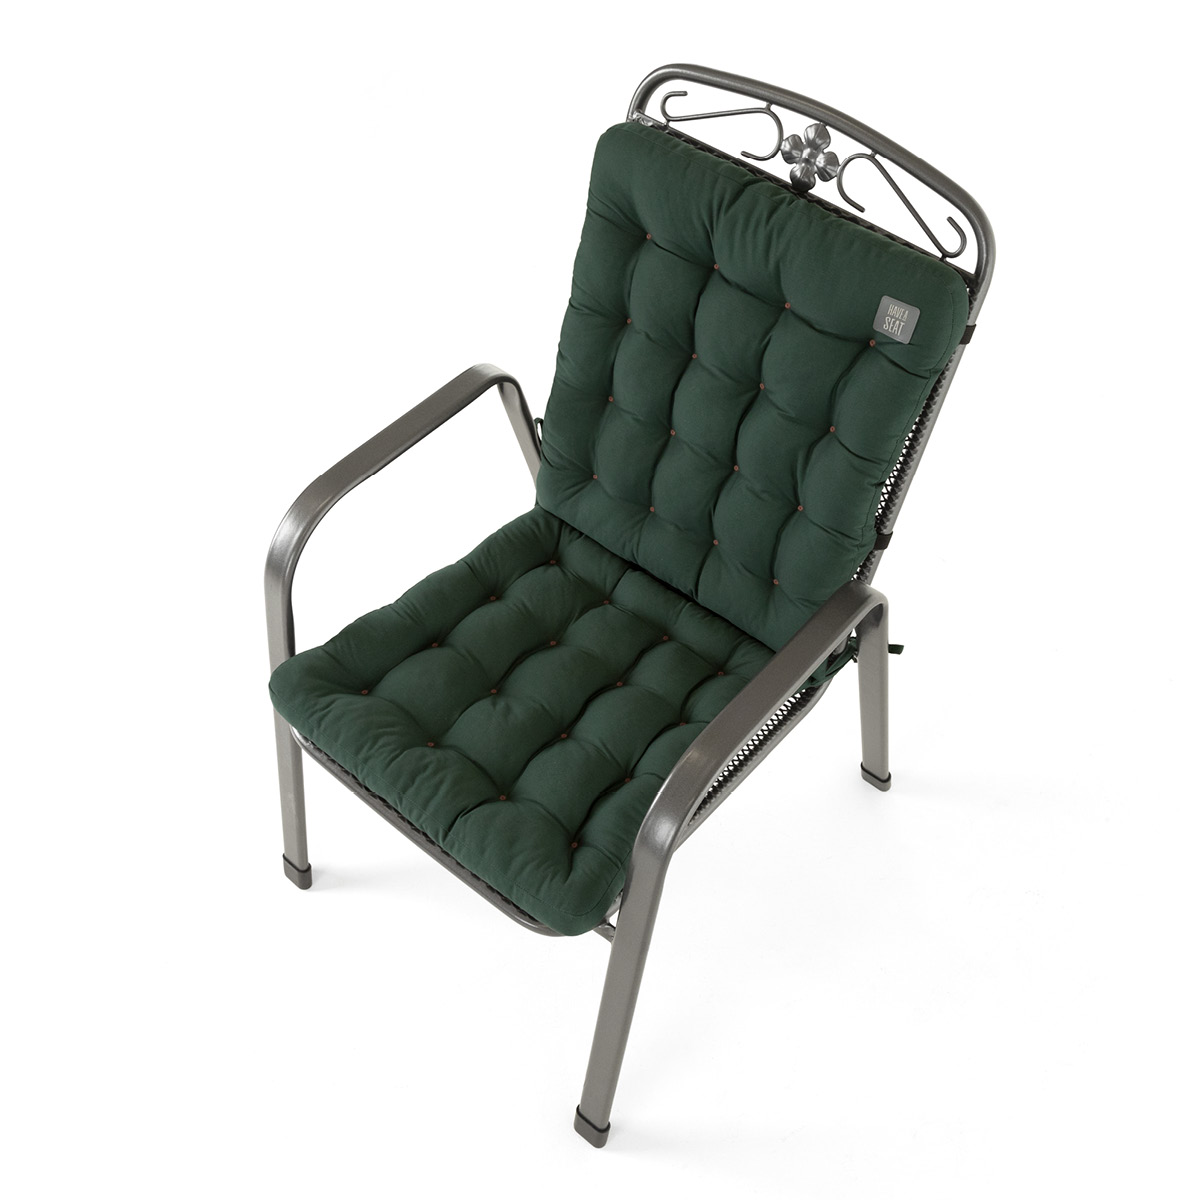 Sitzkissen mit Rückenlehne Moosgrün | dicke Polsterung mit Schleifen und Bänder zur Befestigung an Gartenstuhl / Stapelstuhl | HAVE A SEAT Living 